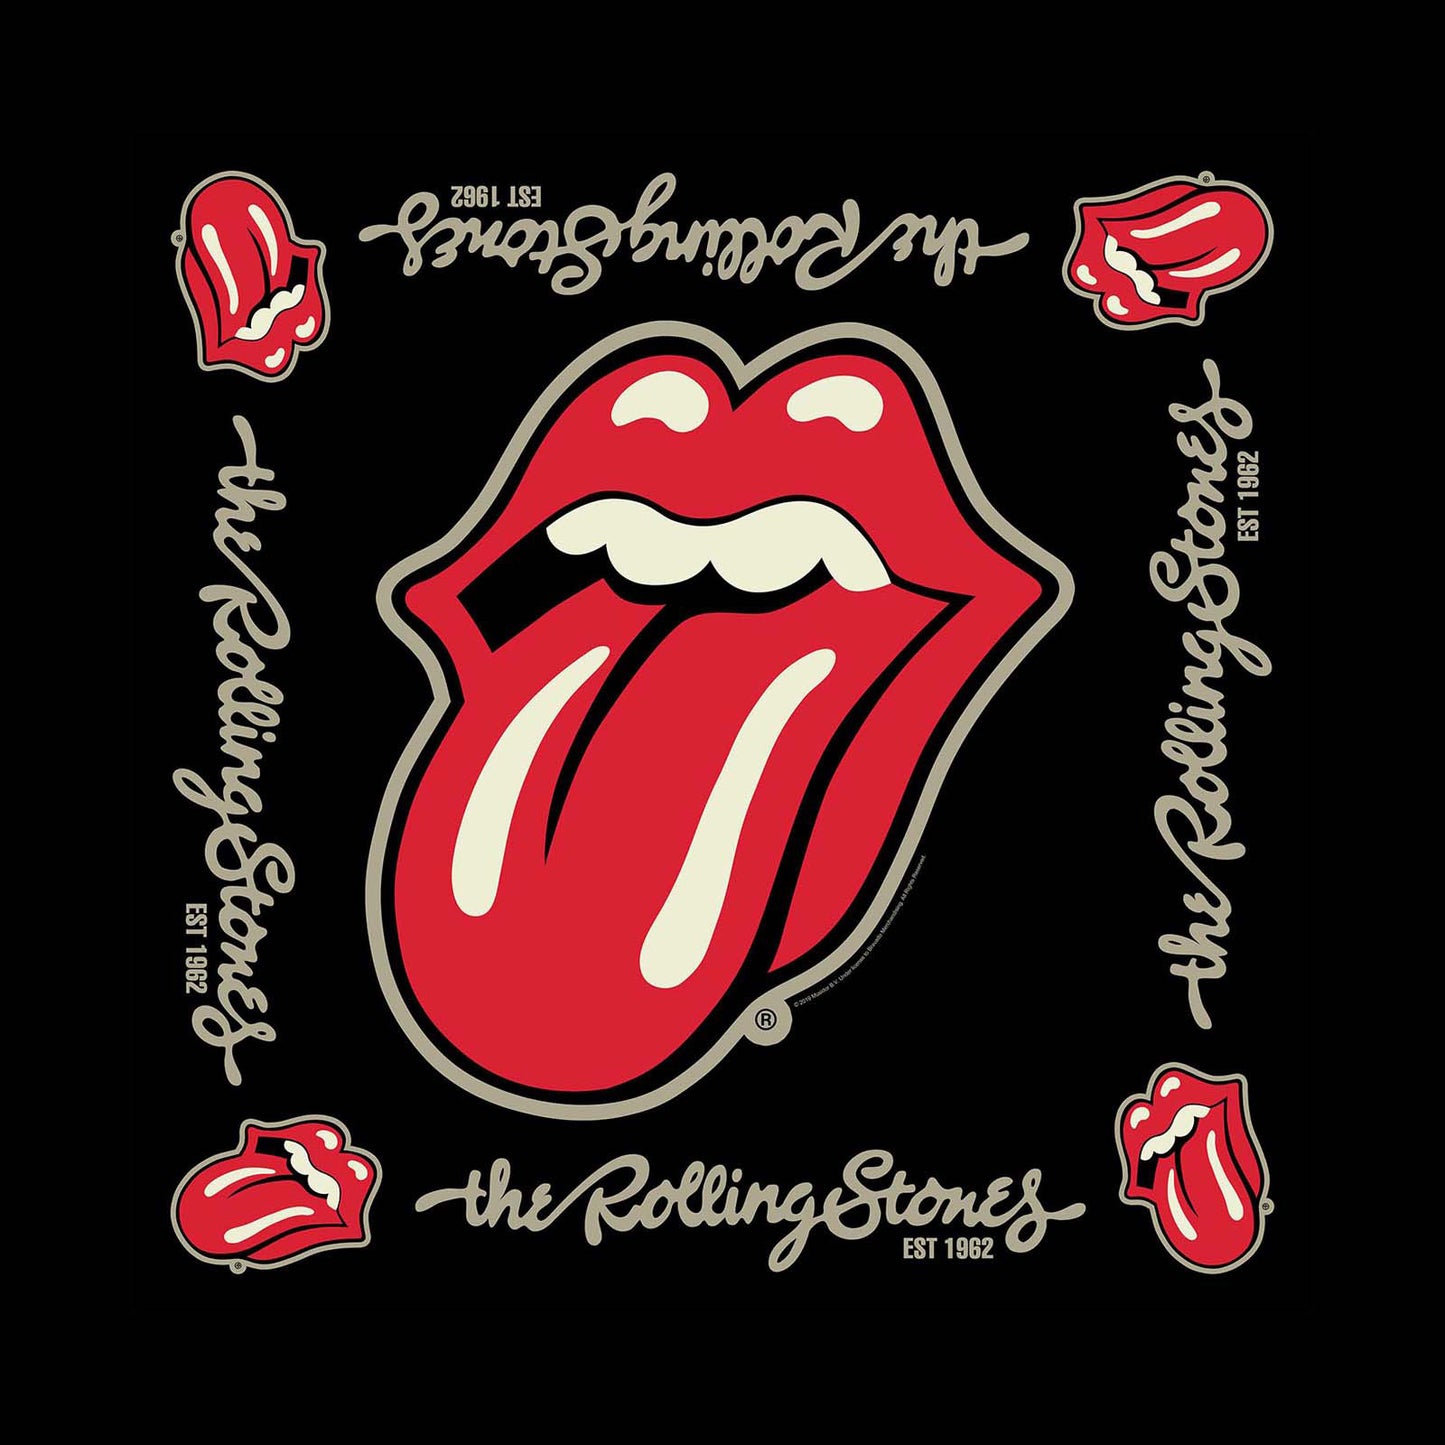 The Rolling Stones Bandana: Established 1962